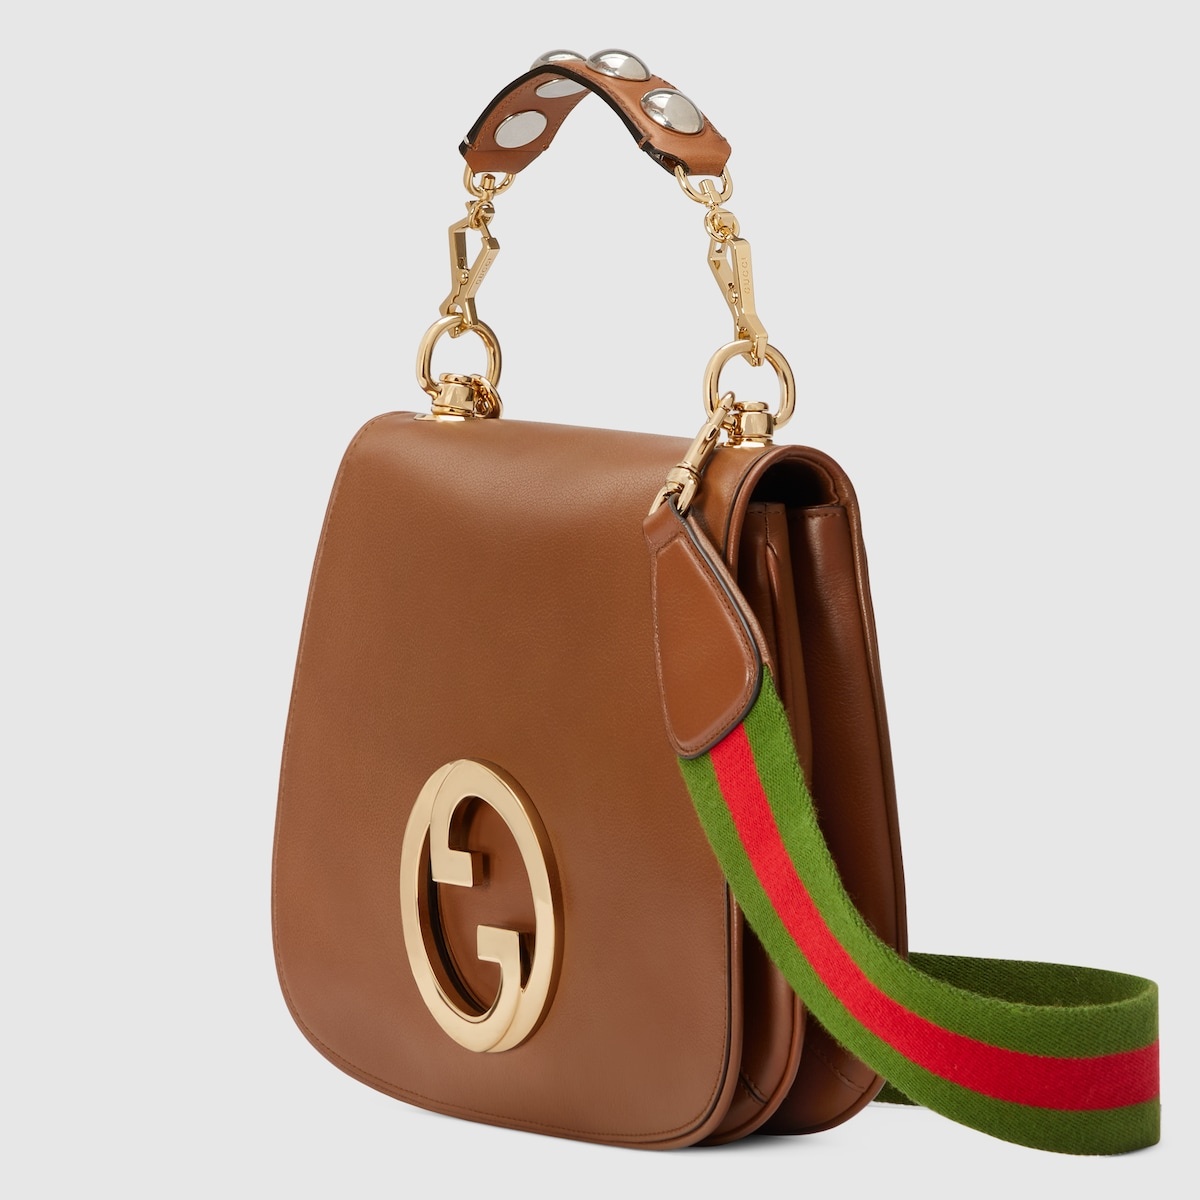 Gucci Blondie top handle bag - 2